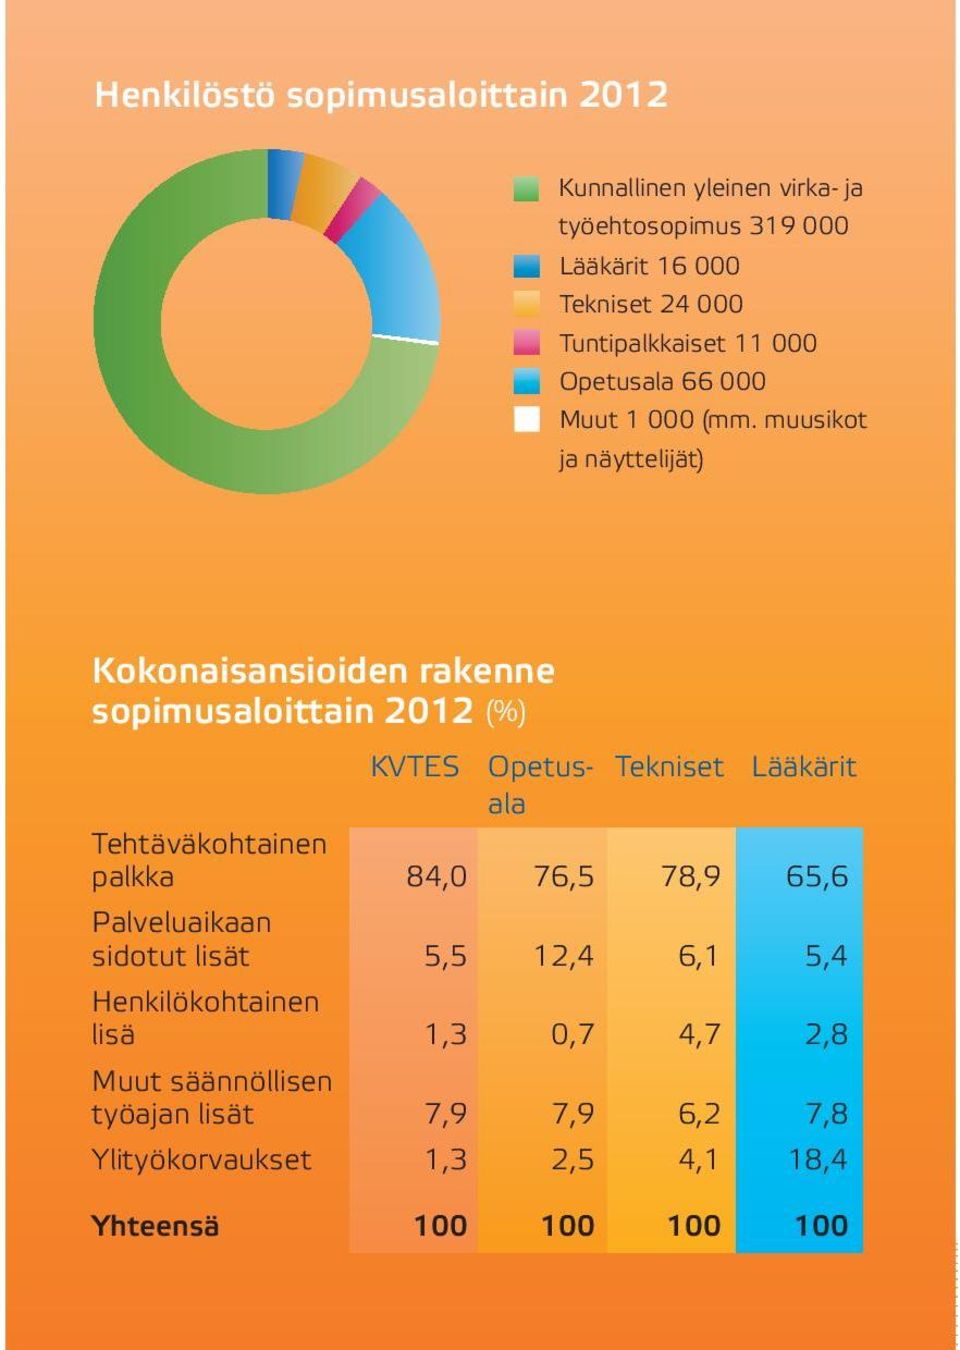 muusikot ja näyttelijät) Kokonaisansioiden rakenne sopimusaloittain 2012 (%) KVTES Opetus- Tekniset Lääkärit ala Tehtäväkohtainen